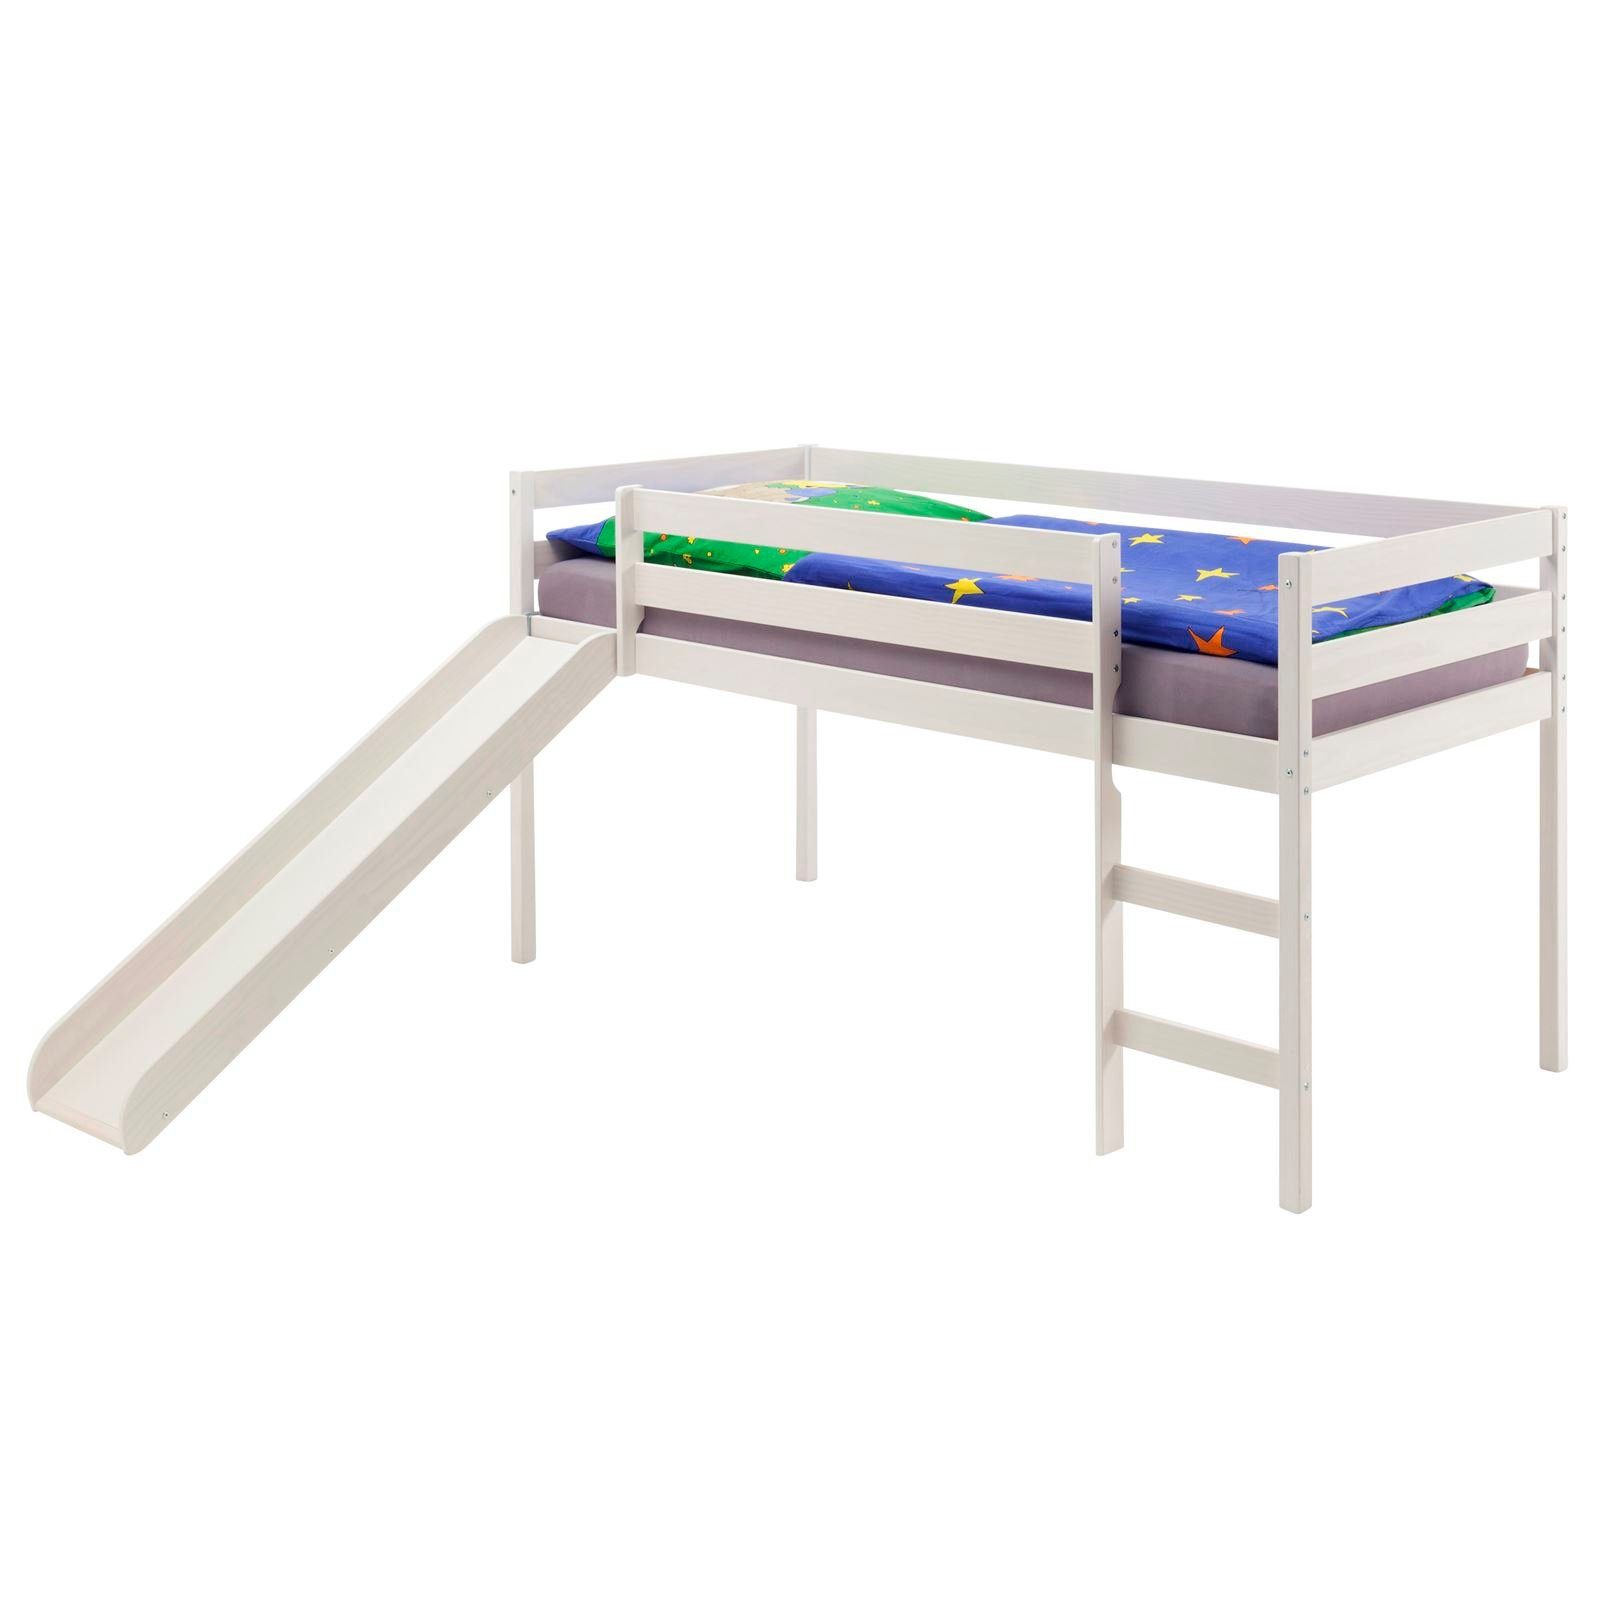 IDIMEX Hochbett BENNY Hochbett mit Rutsche Spielbett Bett Kiefer massiv weiss lackiert 90 x weiß